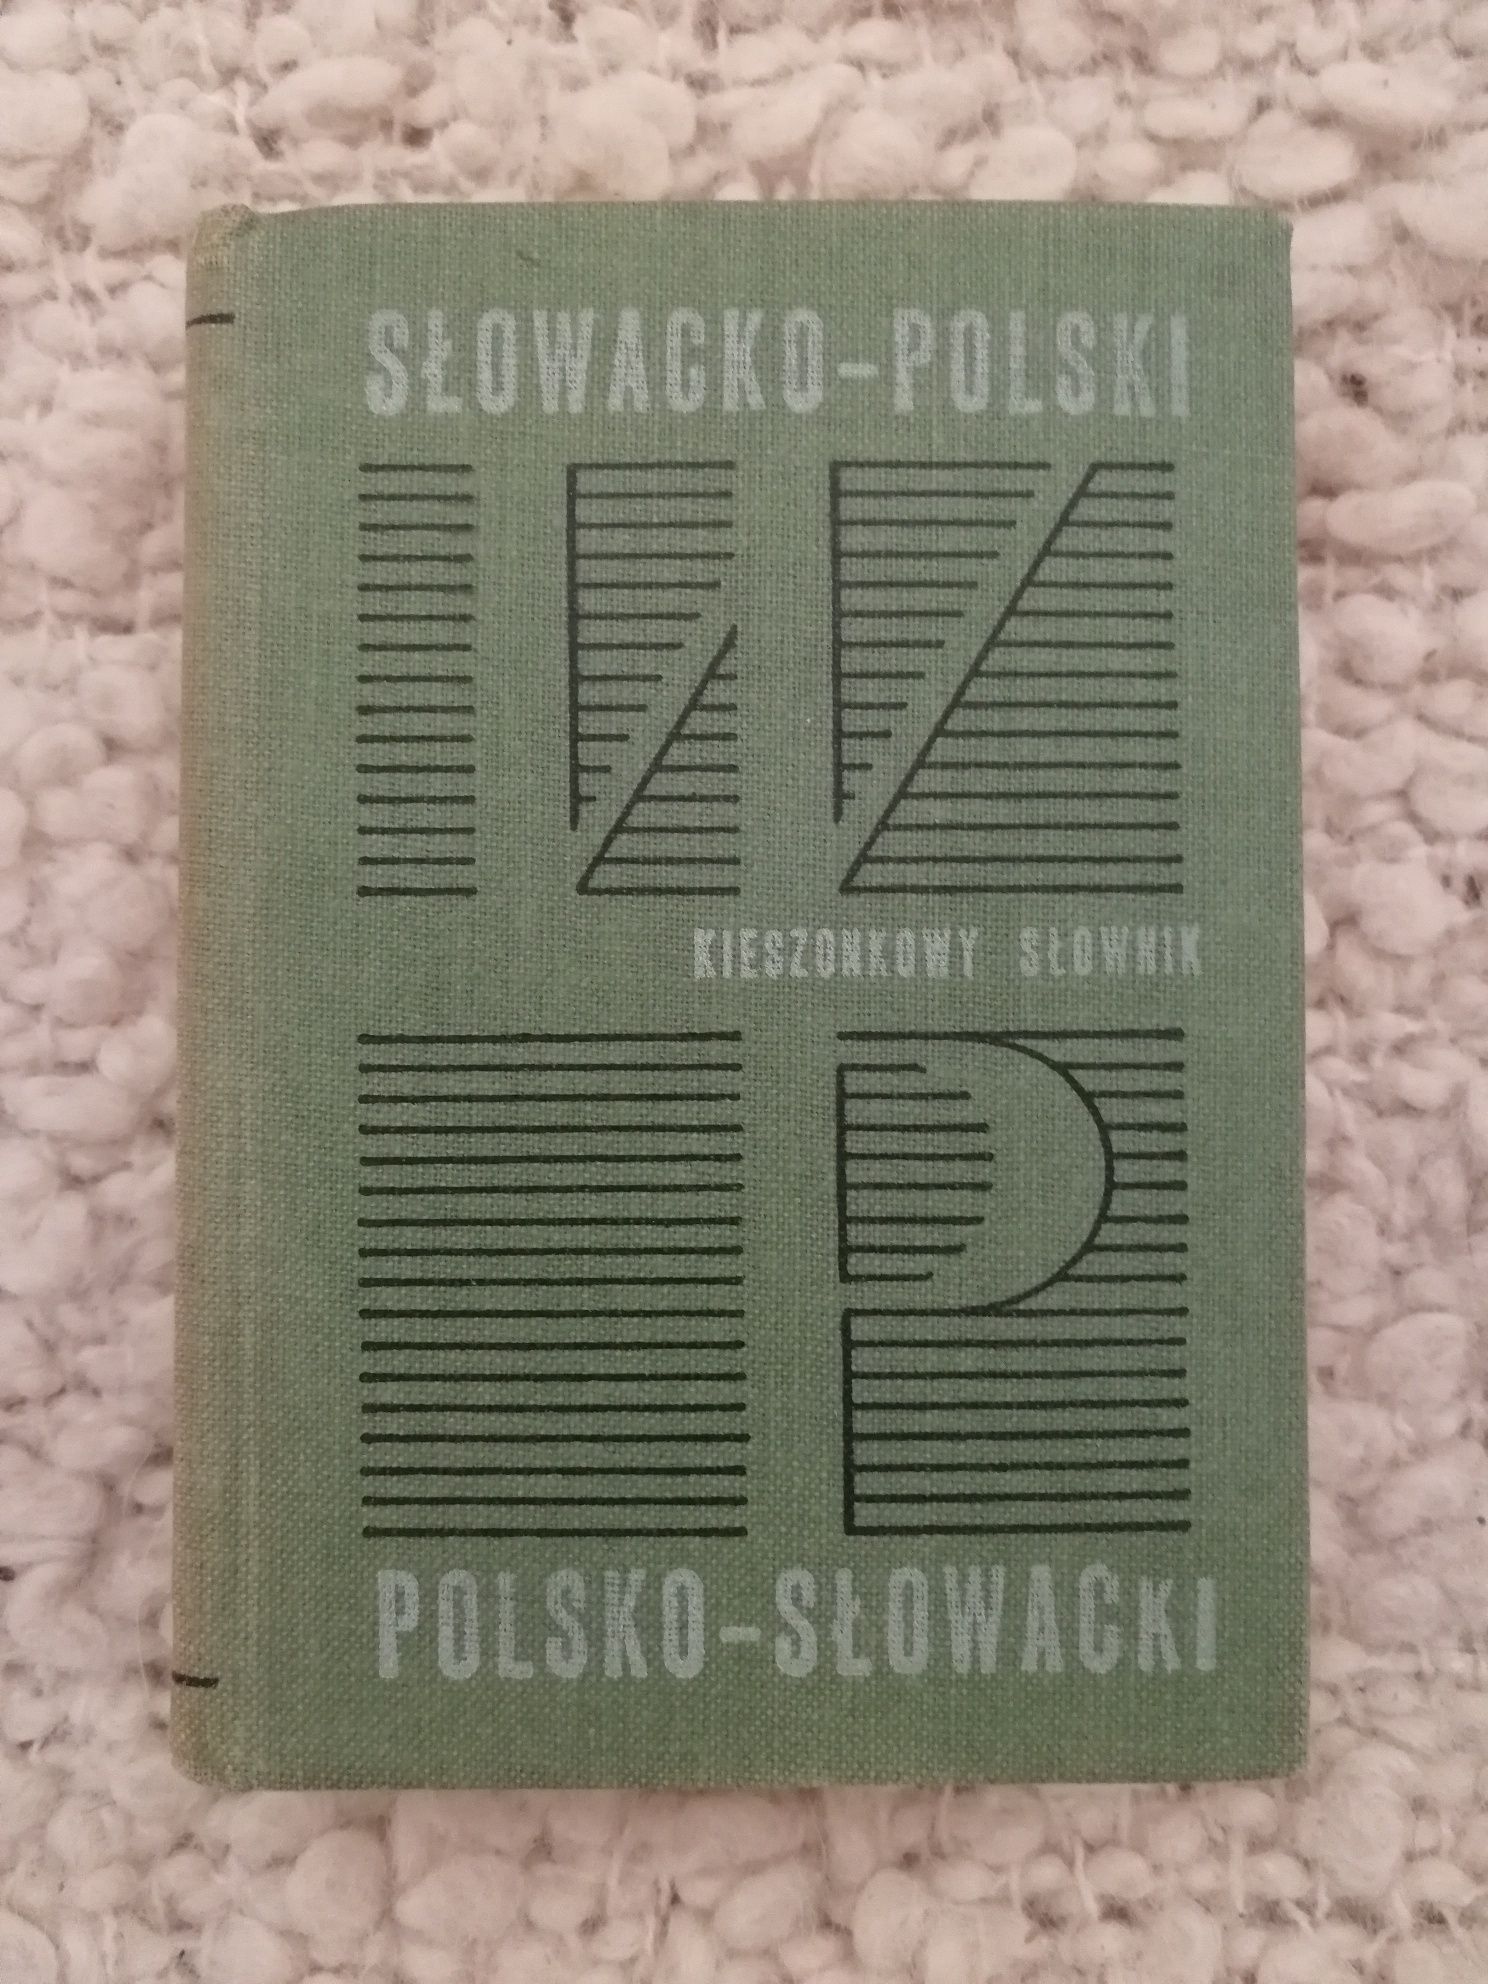 kieszonkowy słownik słowacko - polski polsko - słowacki wydanie 1972r.